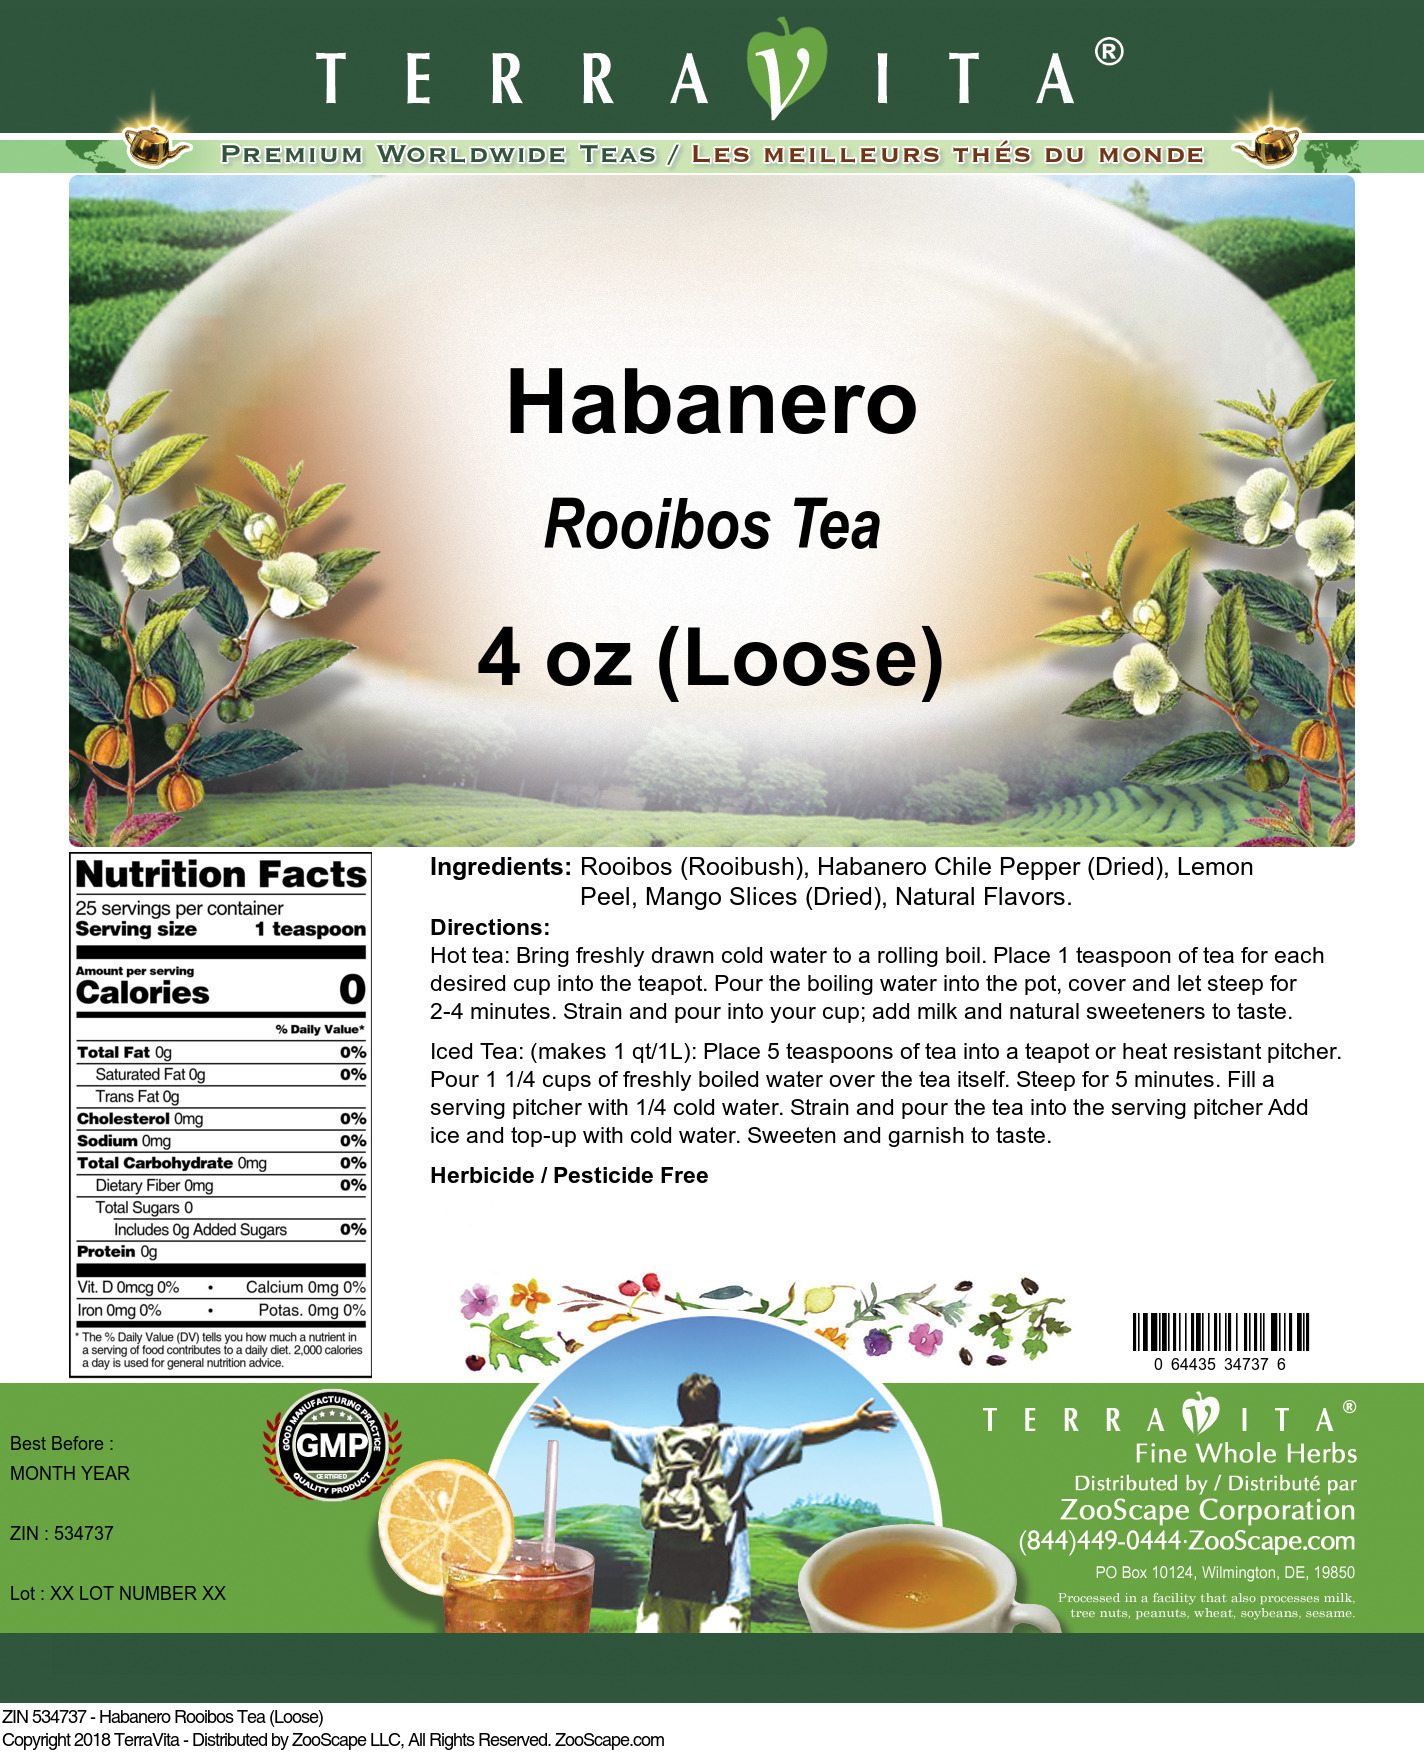 Habanero Rooibos Tea (Loose) - Label